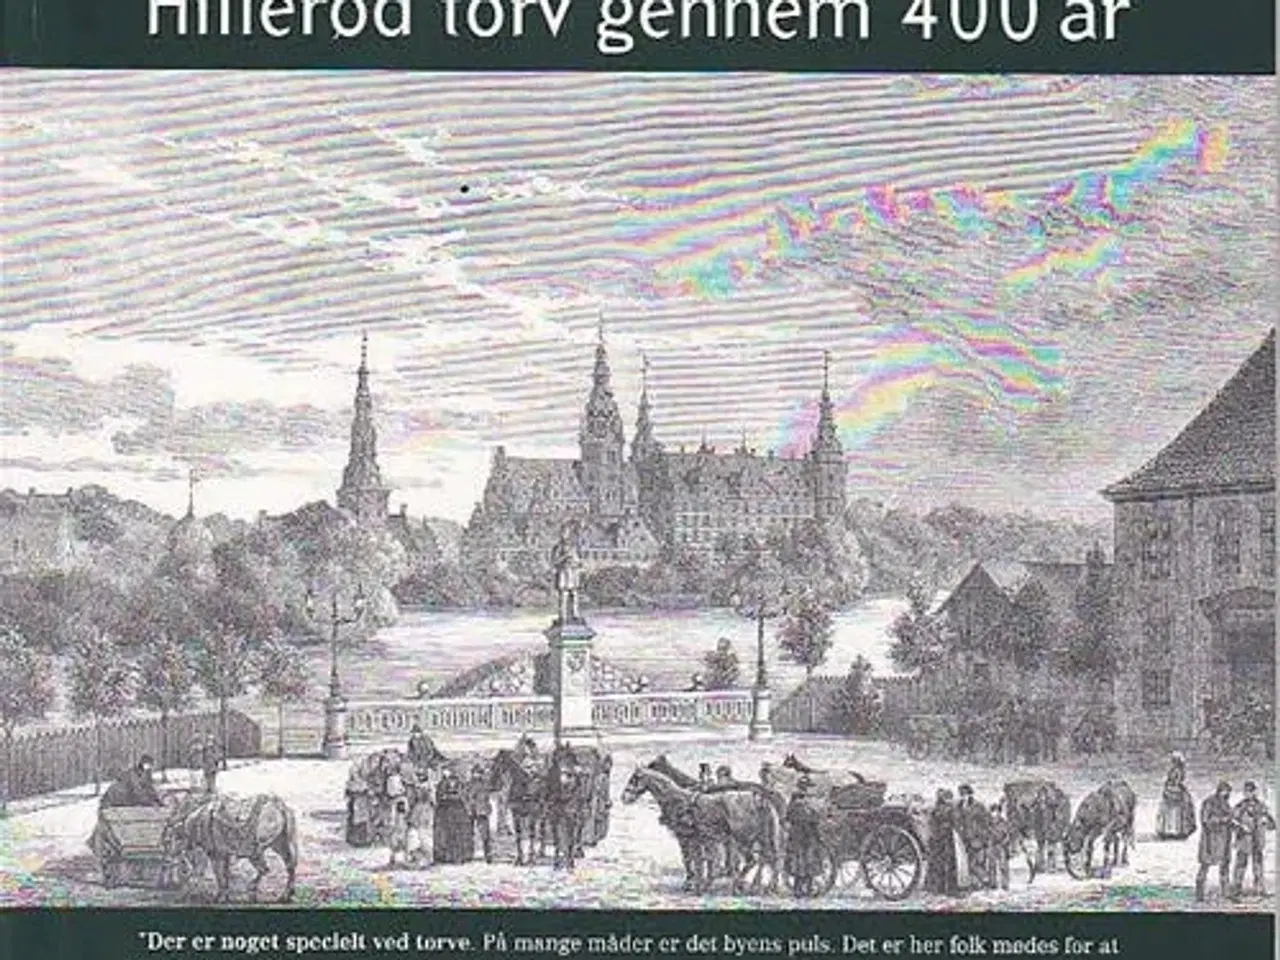 Billede 1 - Hillerød torv gennem 400 år. Ny